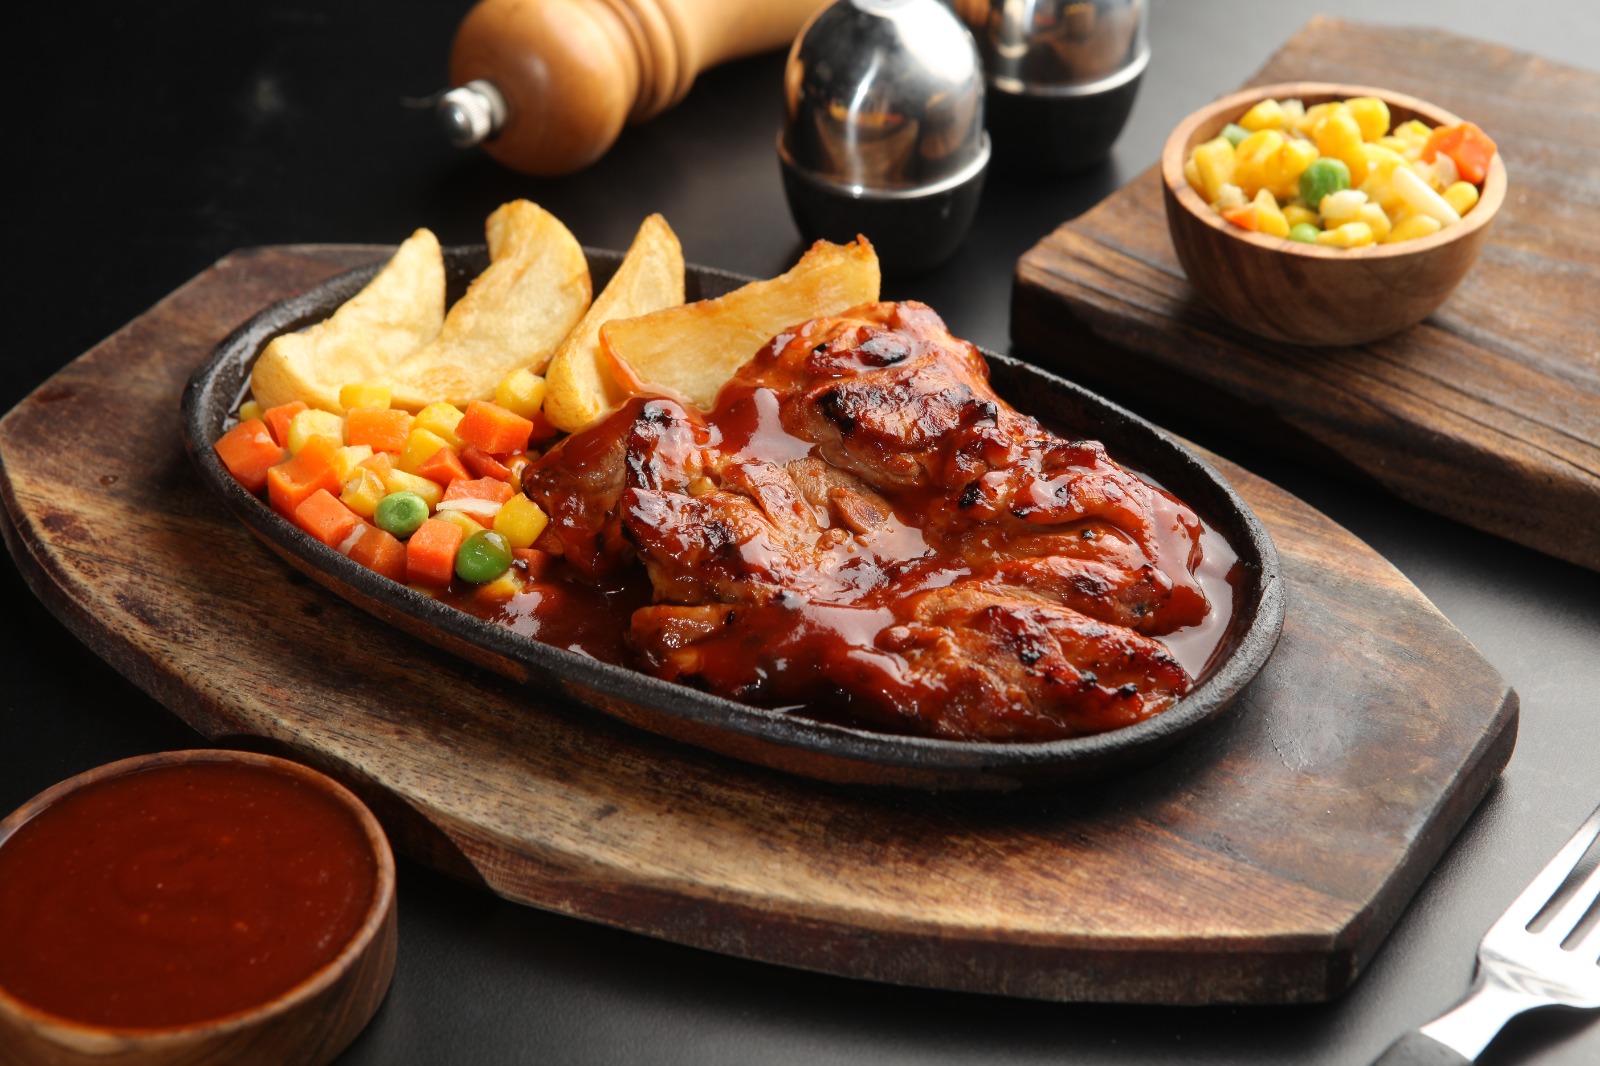 Waroeng Steak & Shake hadirkan pengalaman kuliner yang berbeda dengan inovasi menu terbarunya. Restoran dengan tagline “Steaknya Indonesia” meluncurkan menu Chicken BBQ Grill dengan saus barbeque yang spesial.